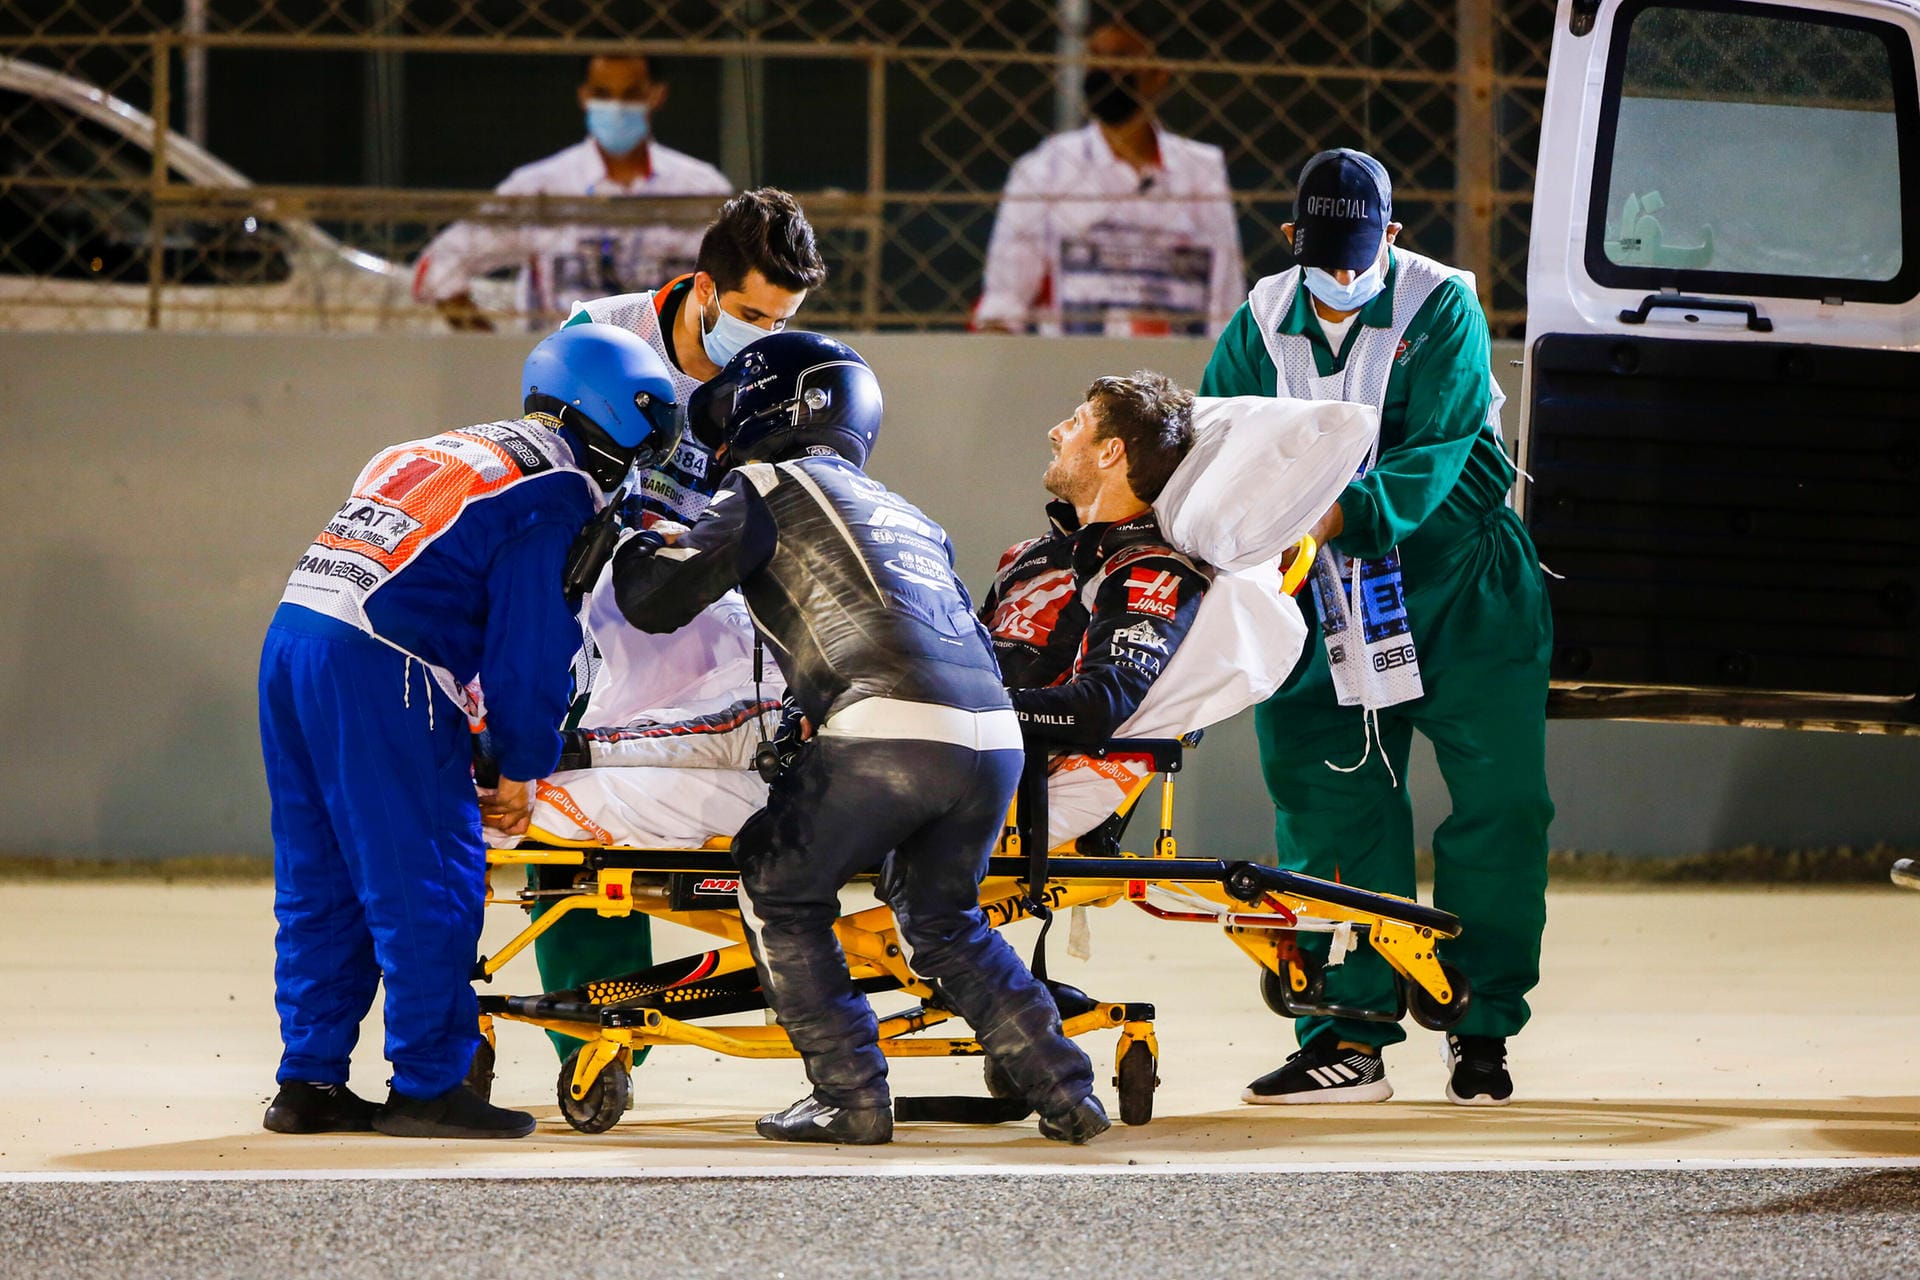 Haas-Teamchef Günther Steiner konnte schnell für Klarheit sorgen: Es gehe Grosjean weitgehend gut. "Das war Glück im Unglück – und auch viel Einsatz von den Rettungsleuten."